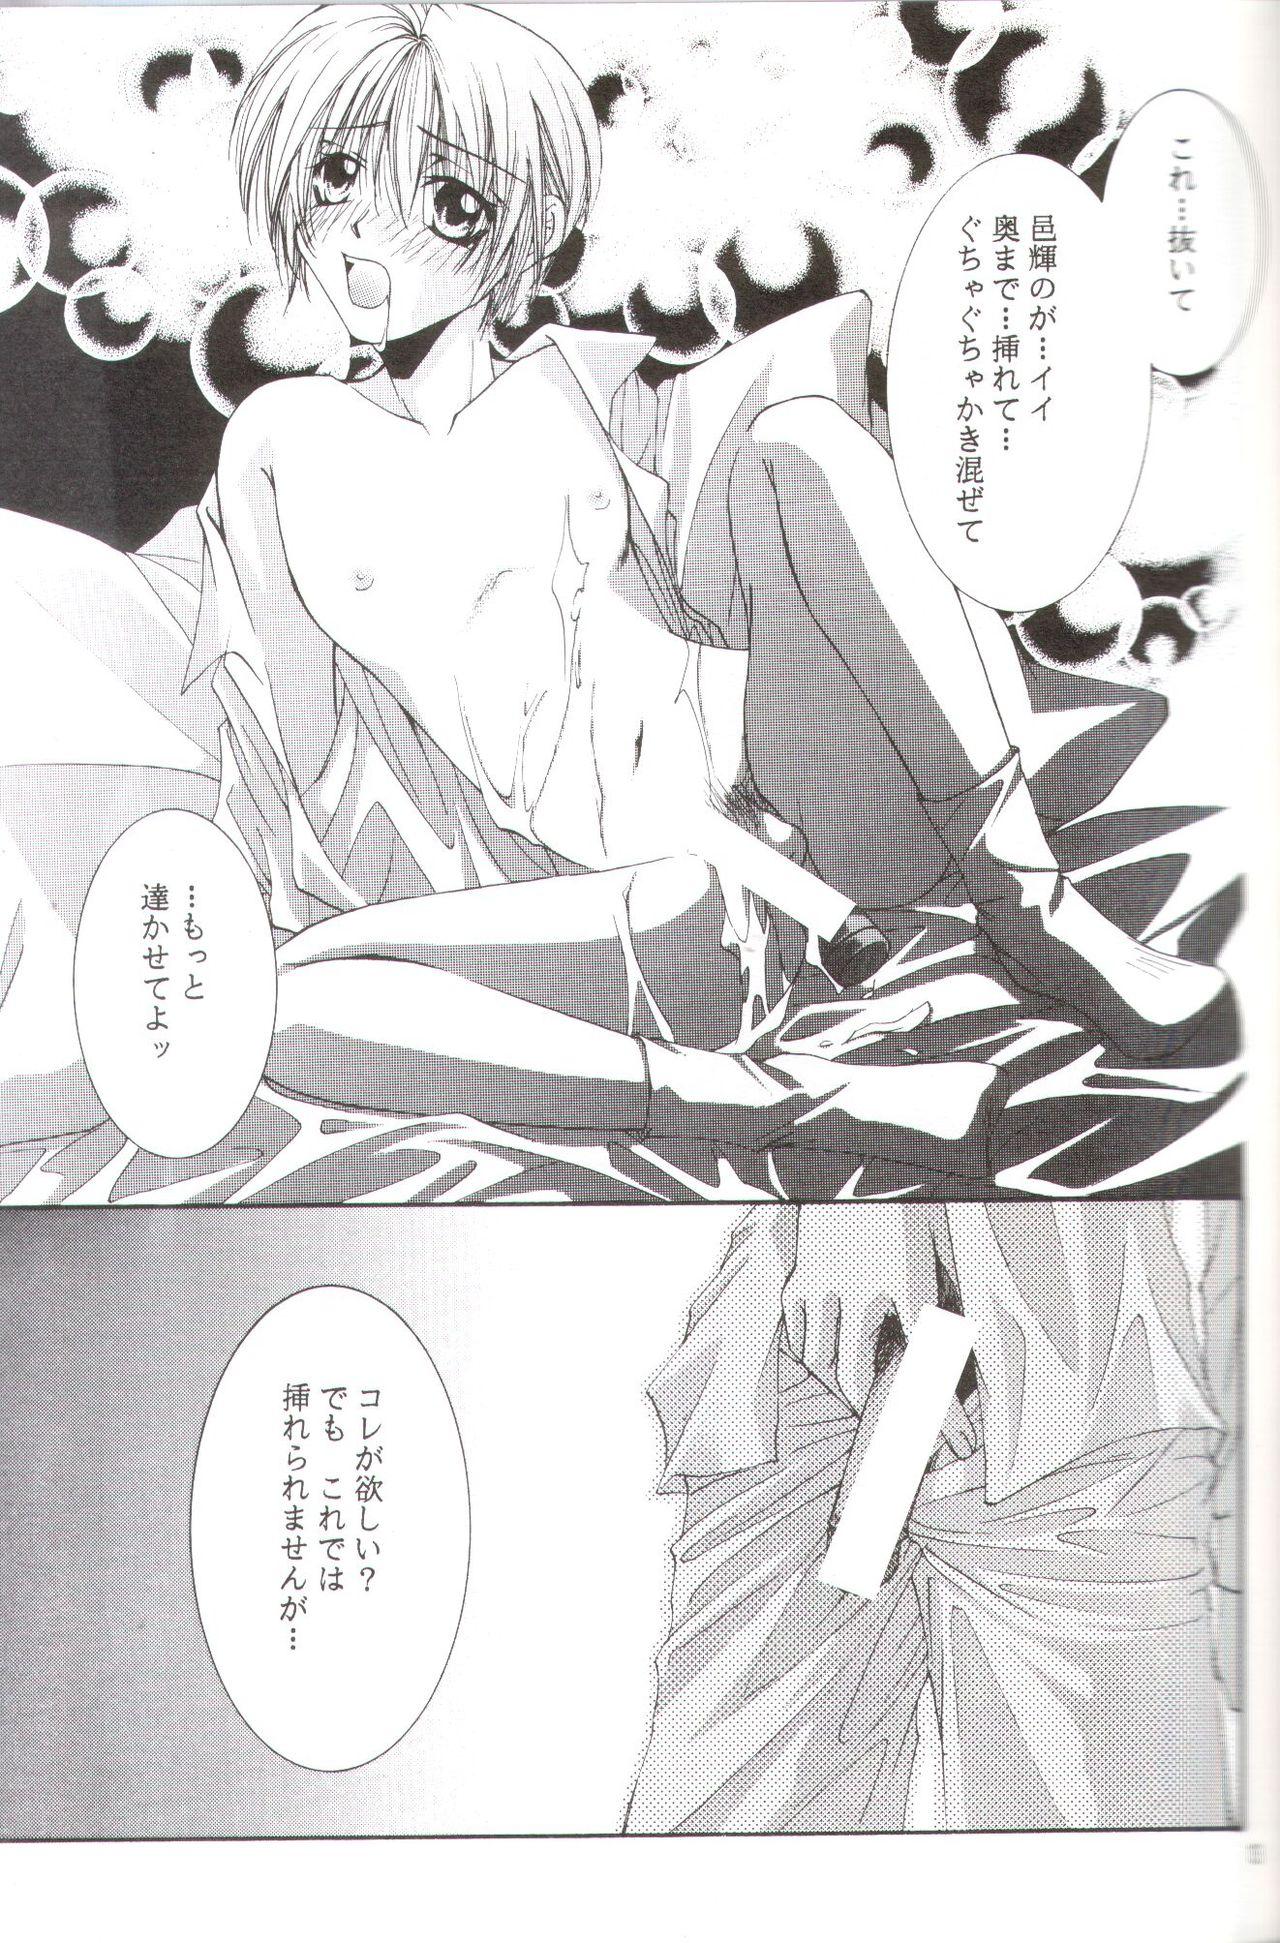 Socks Kanaria wa Tsuki to Utau II - Yami no matsuei | descendants of darkness Sex Toys - Page 10